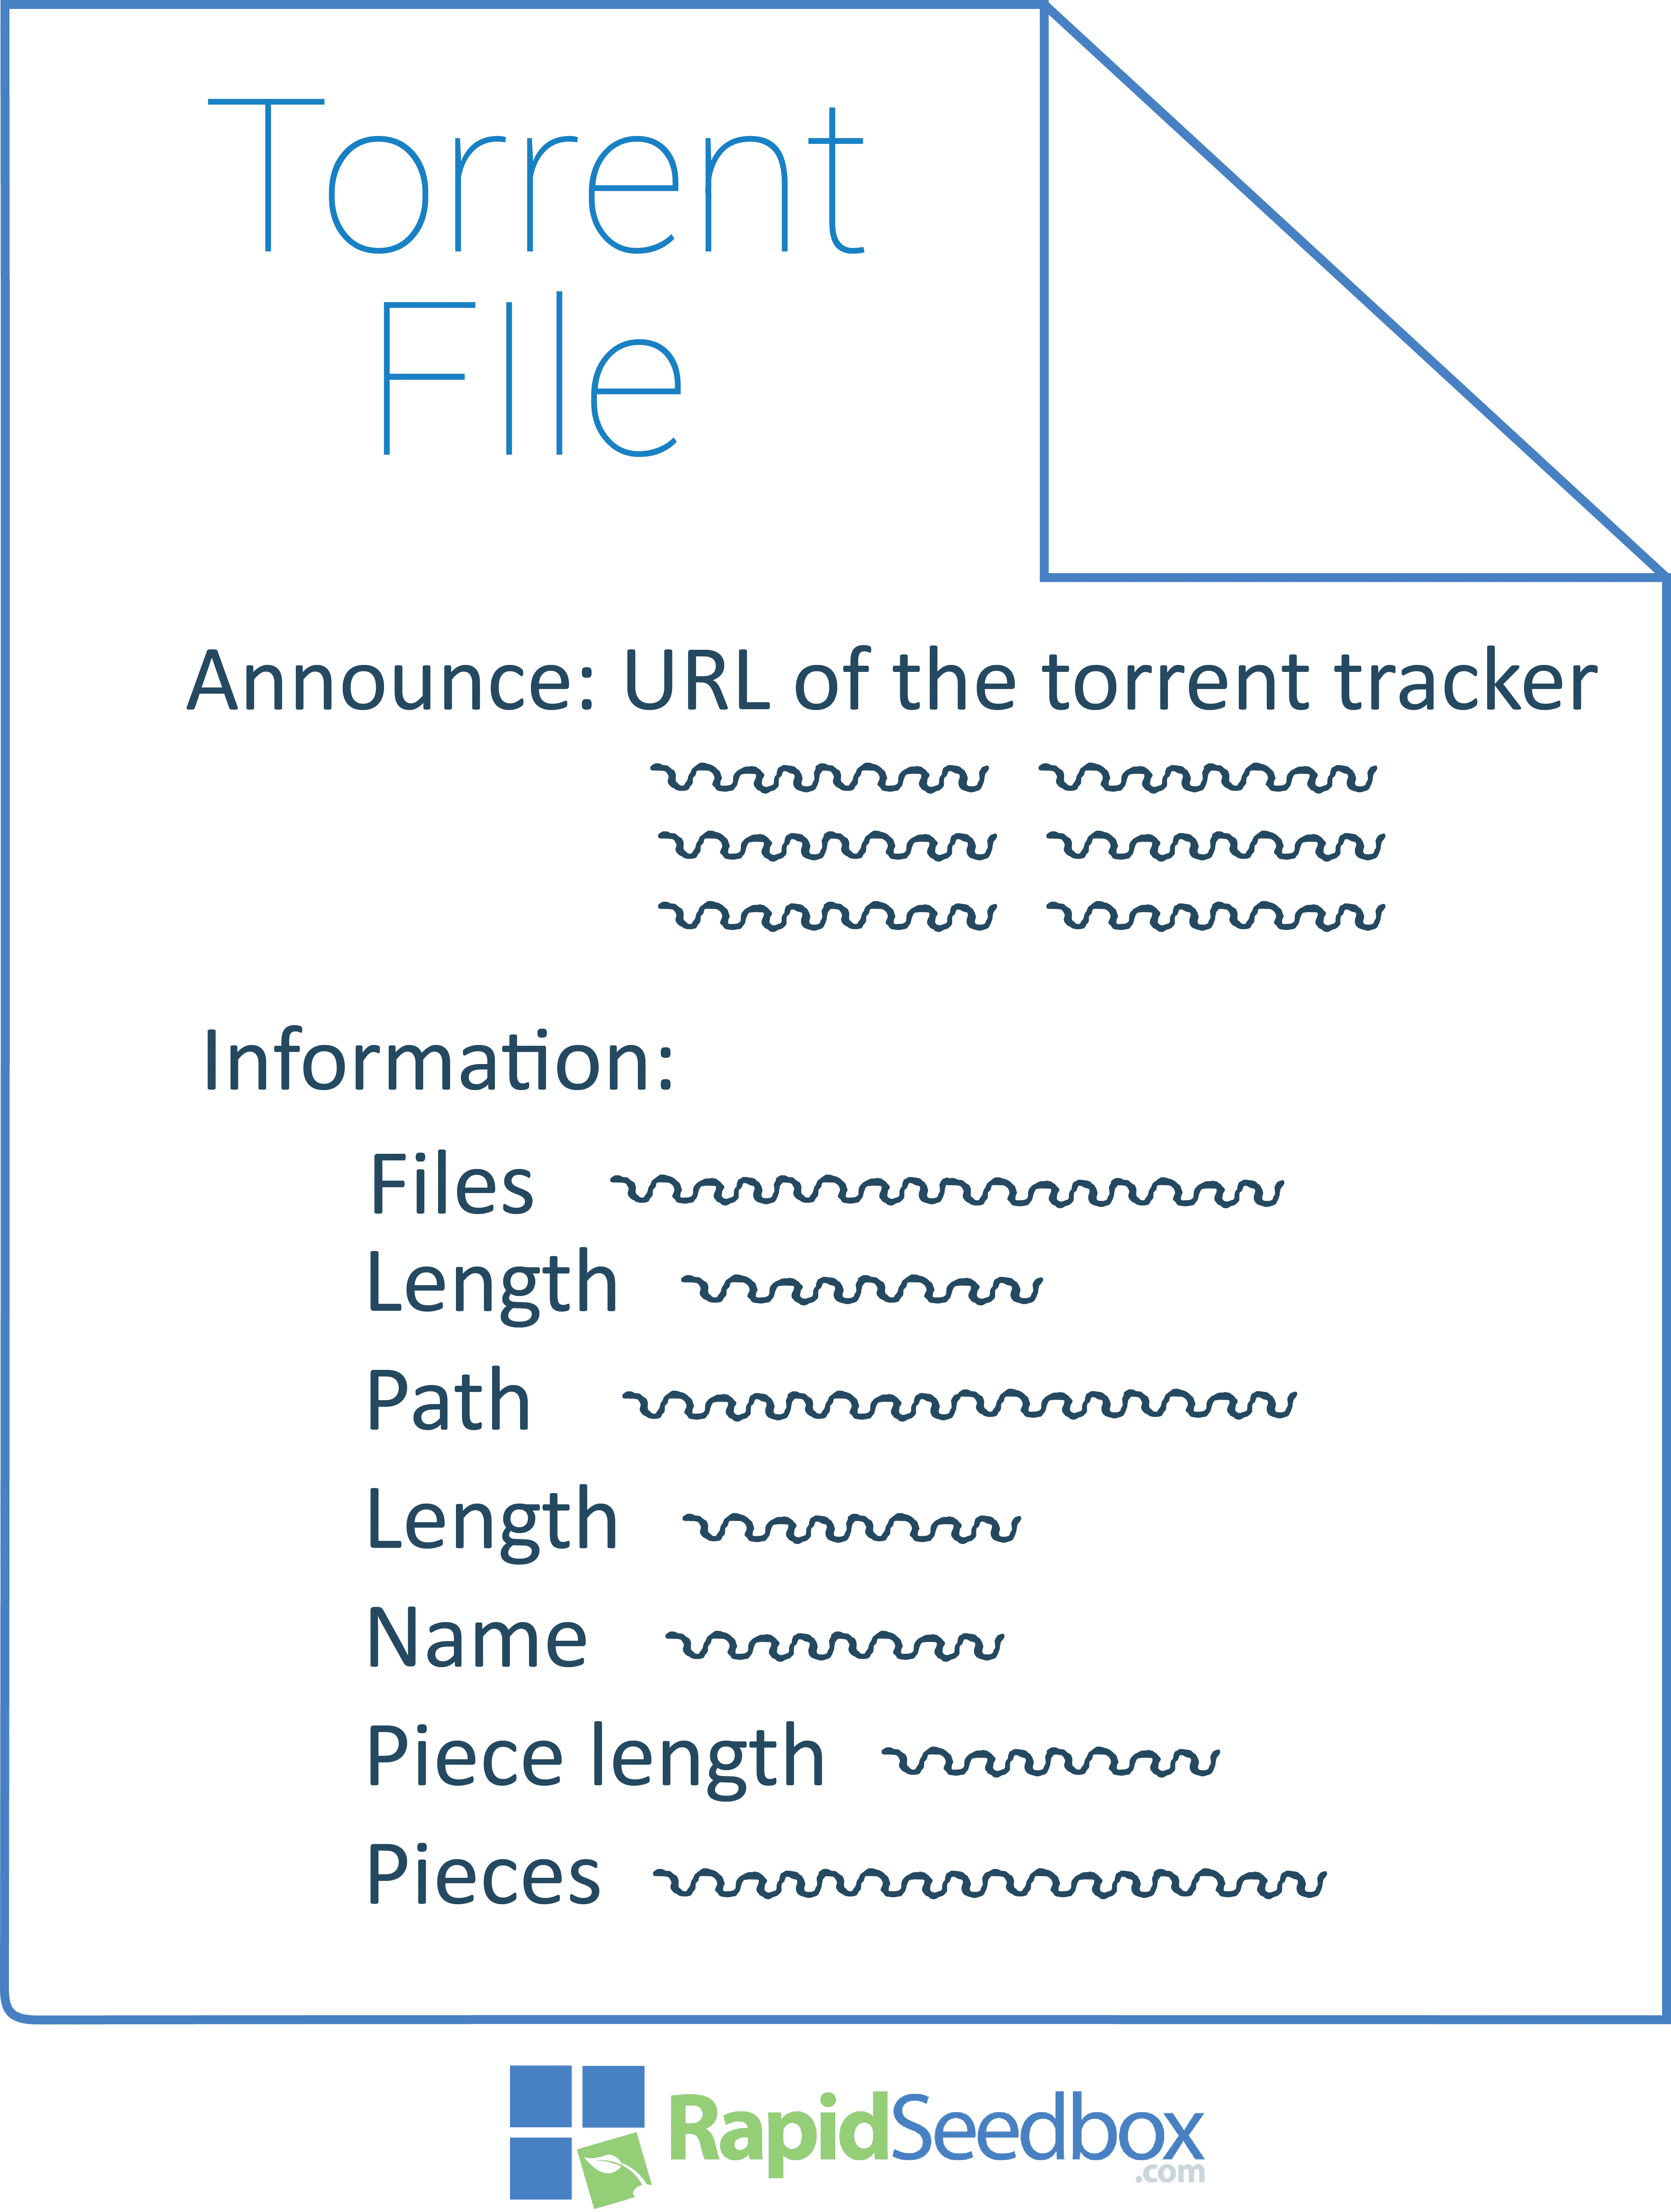 torrent file download online